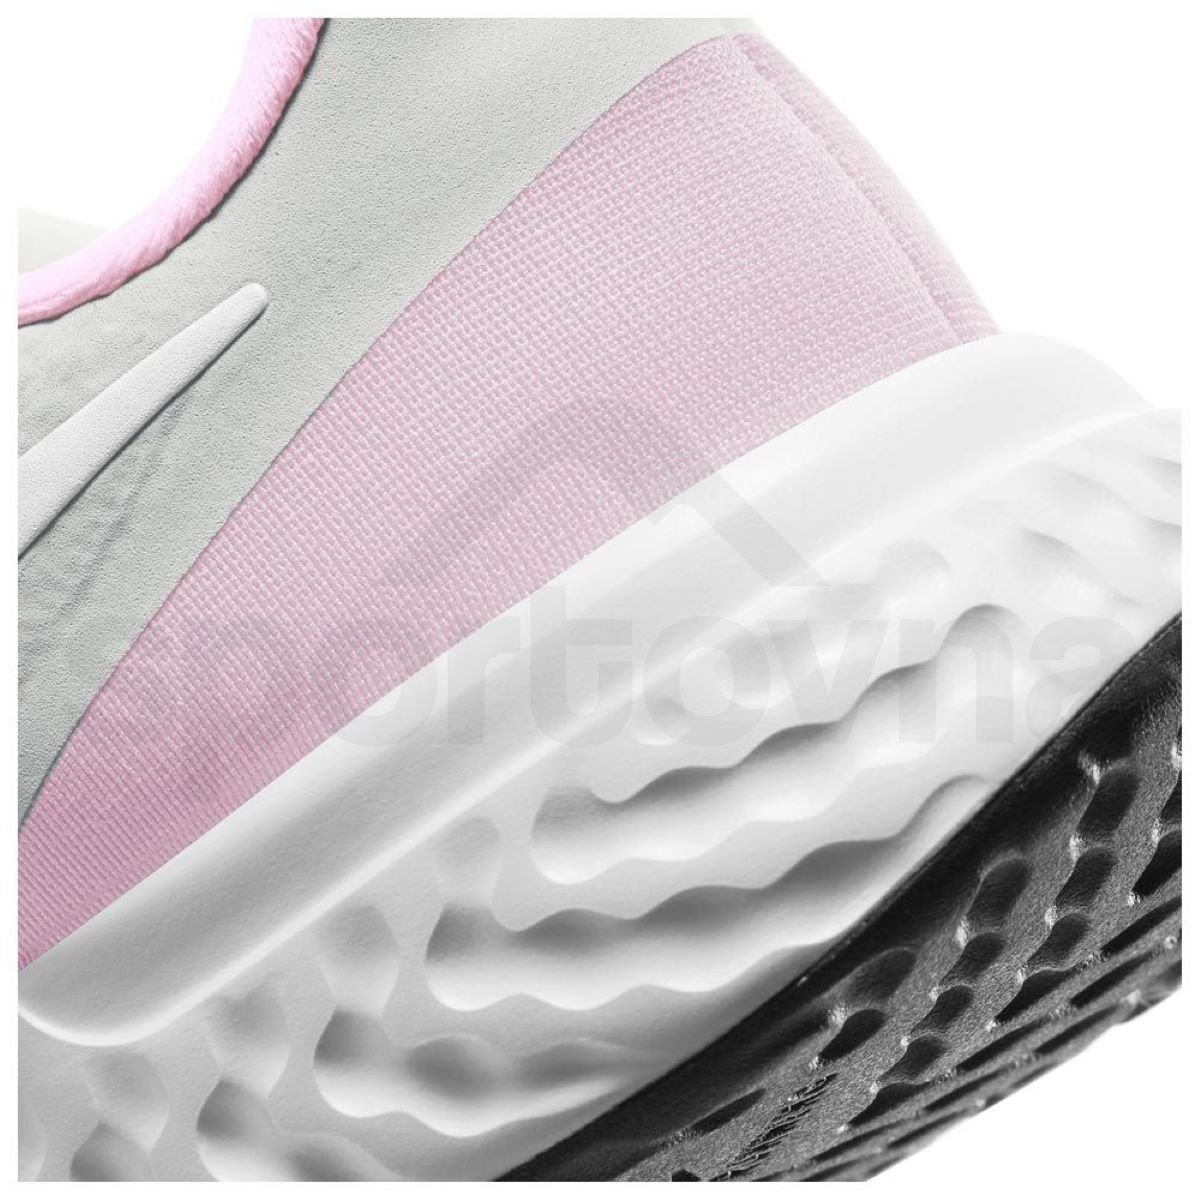 Obuv Nike Revolution 5 J - šedá/růžová